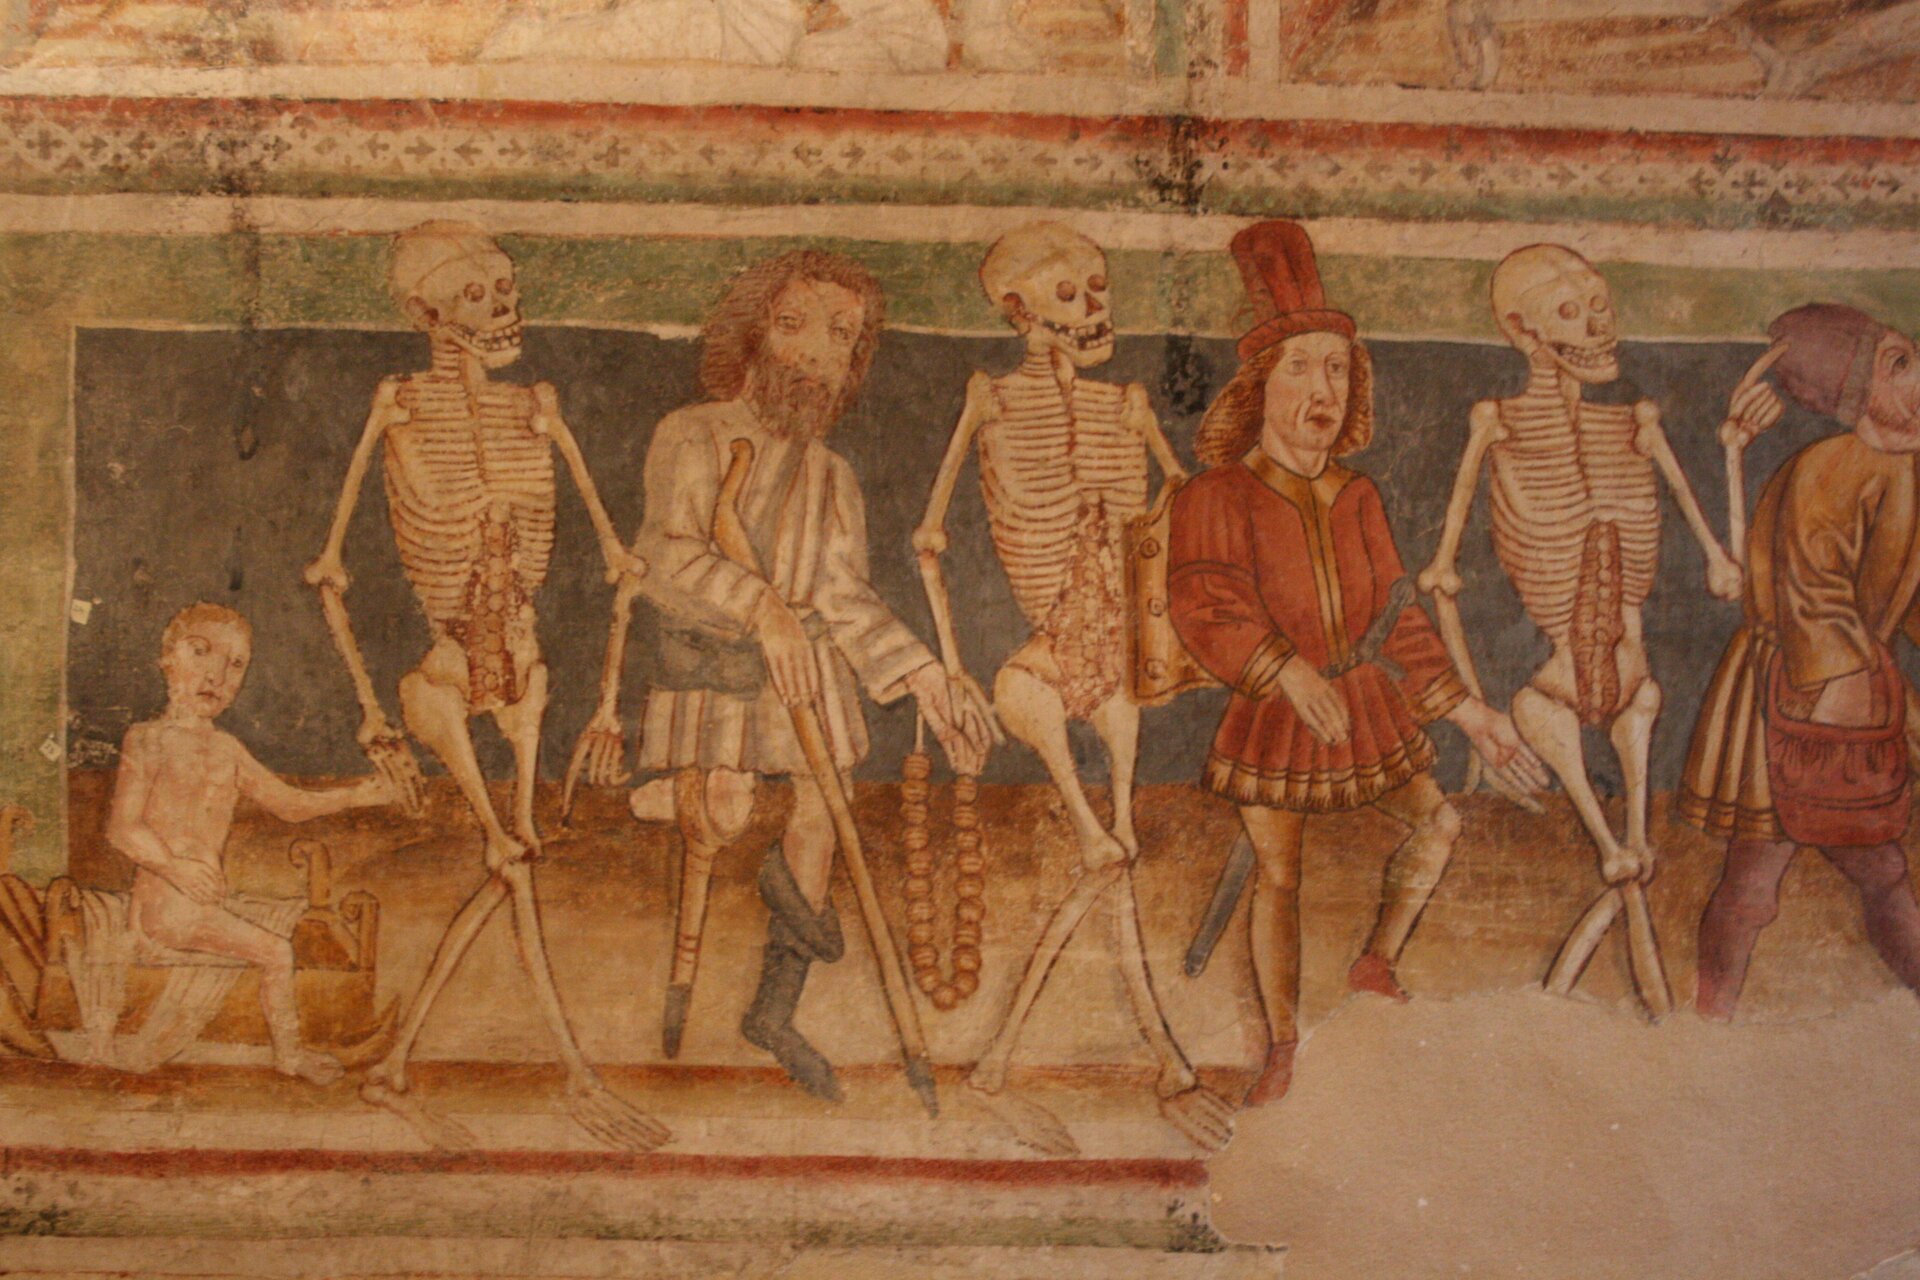 Ilustracja przedstawia grafikę: taniec szkieletów i ludzi. Korowód złożony jest naprzemiennie ze szkieletów i postaci ludzkich. Wszyscy trzymają się za ręce.